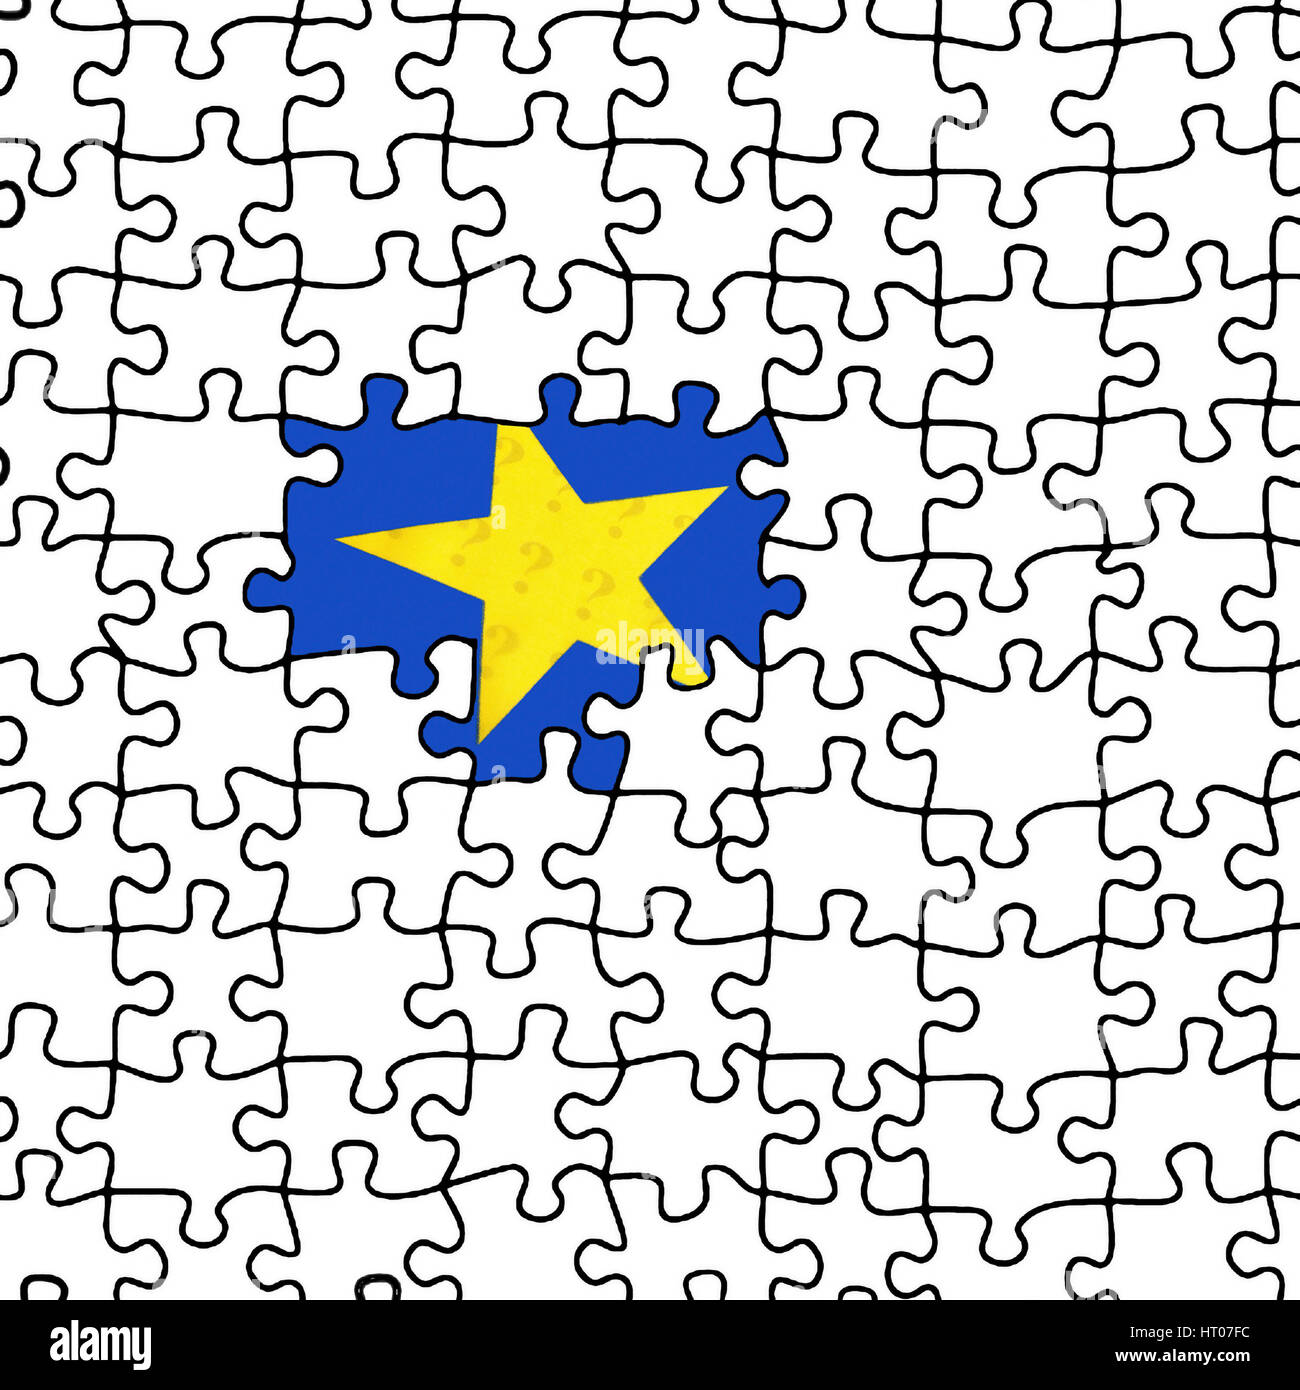 EU-Fahne erscheint unter Puzzle - EU flag appears in a puzzle Stock Photo